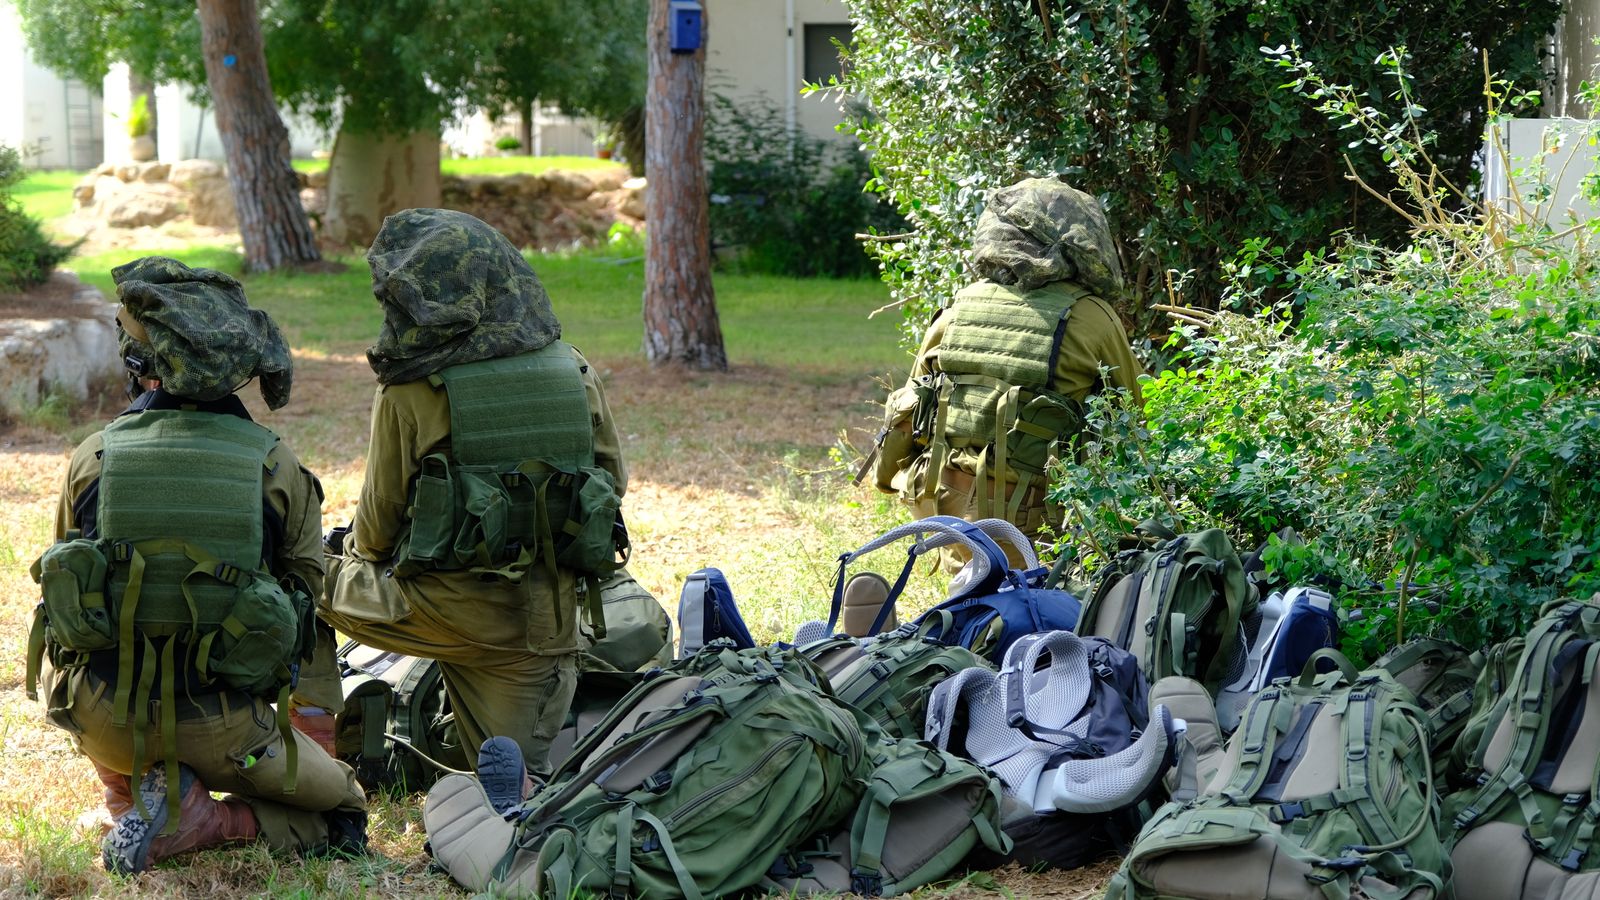 À l’intérieur du kibboutz israélien devenu le lieu d’un « carnage » |  Stuart Ramsay rend compte de la scène |  Nouvelles du monde